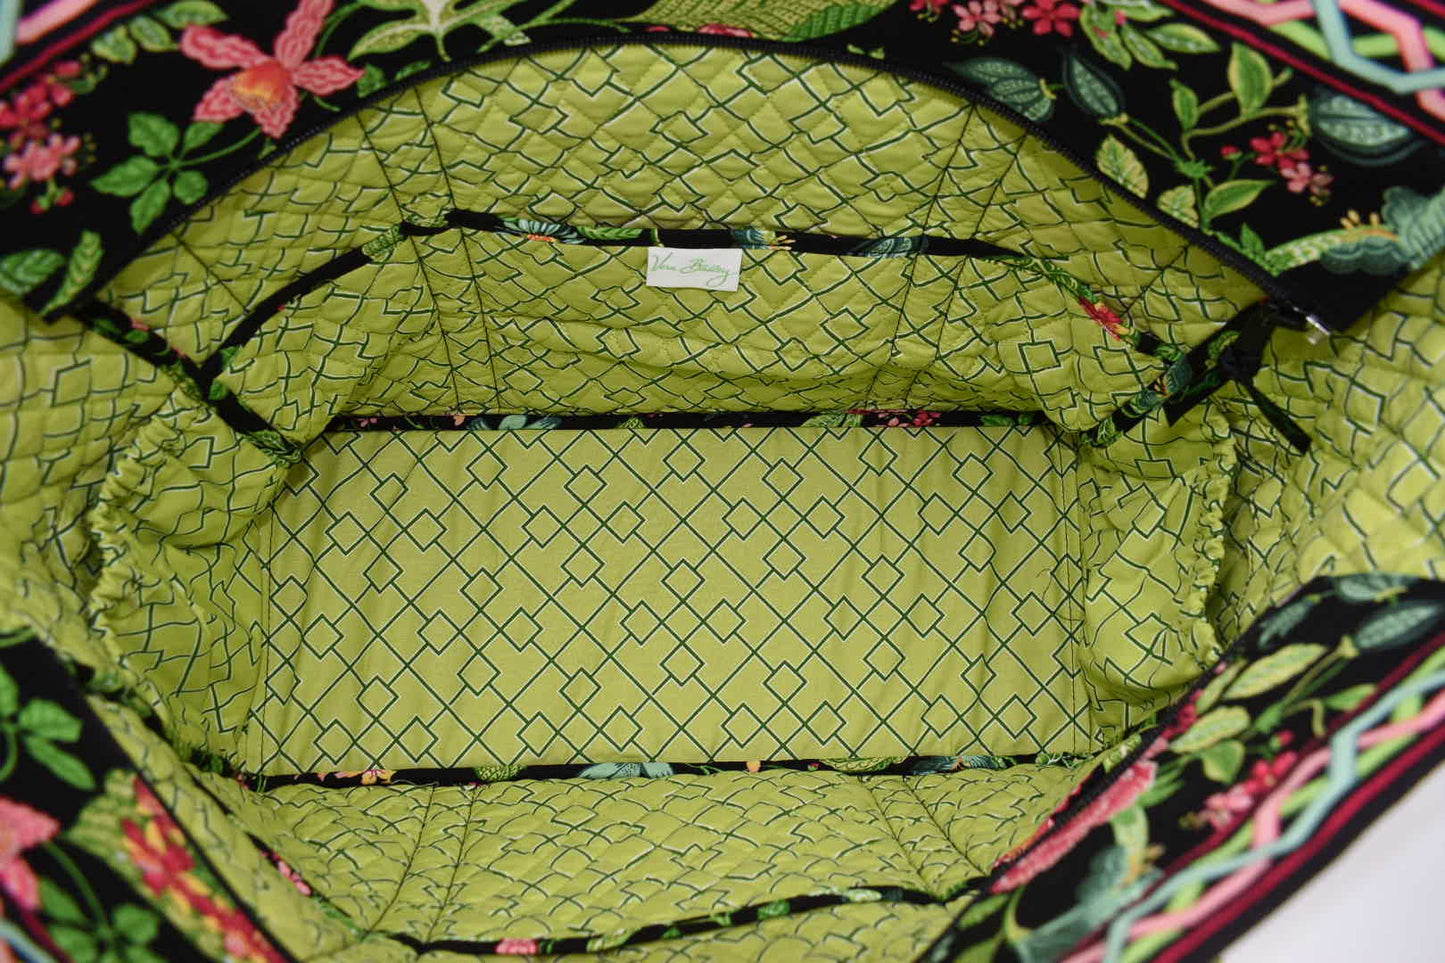 Vera Bradley Get Carried Away Tote Bag in "Botanica" Pattern